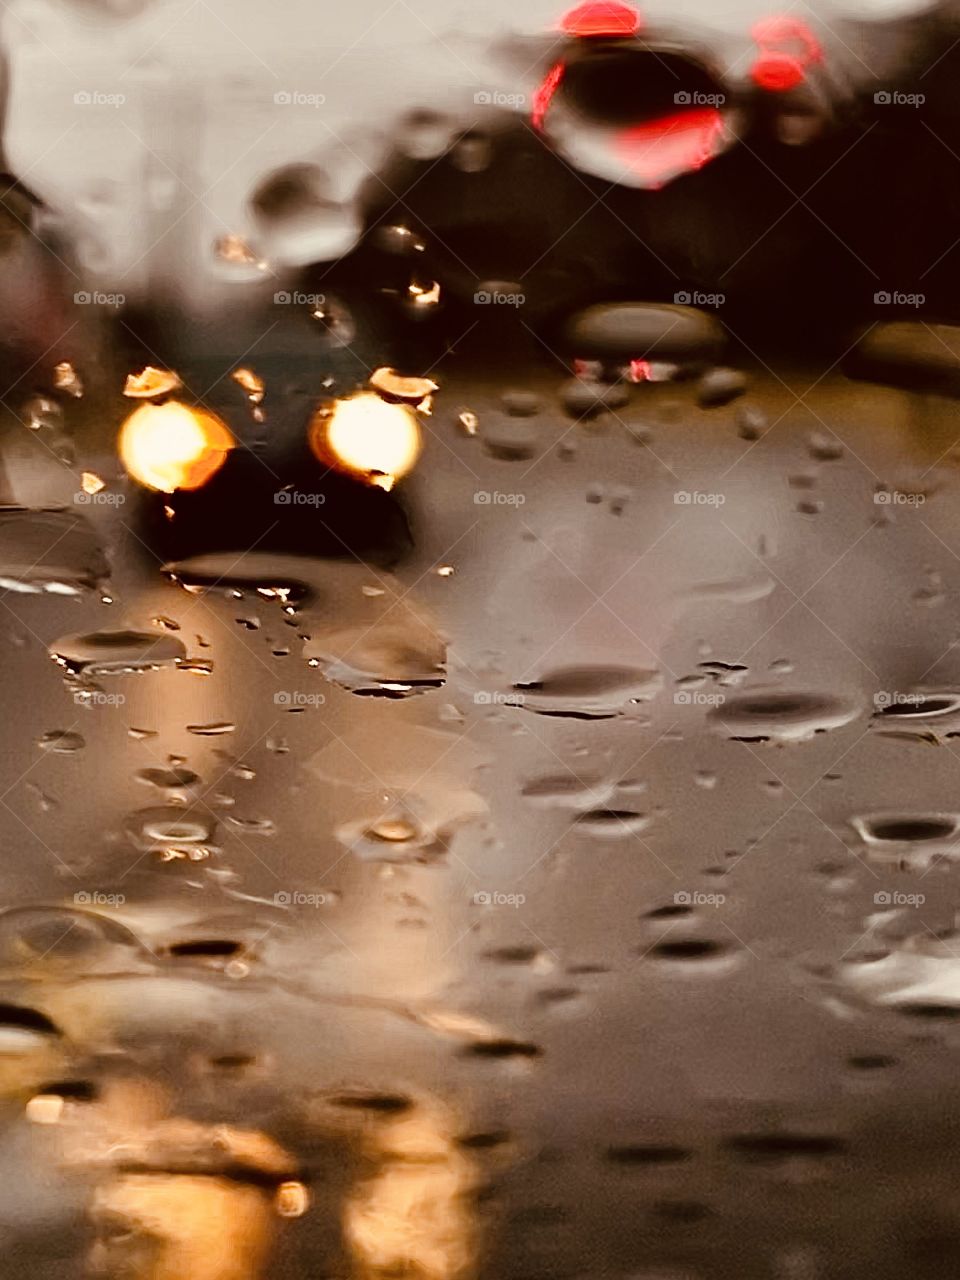 Seeing through the rain